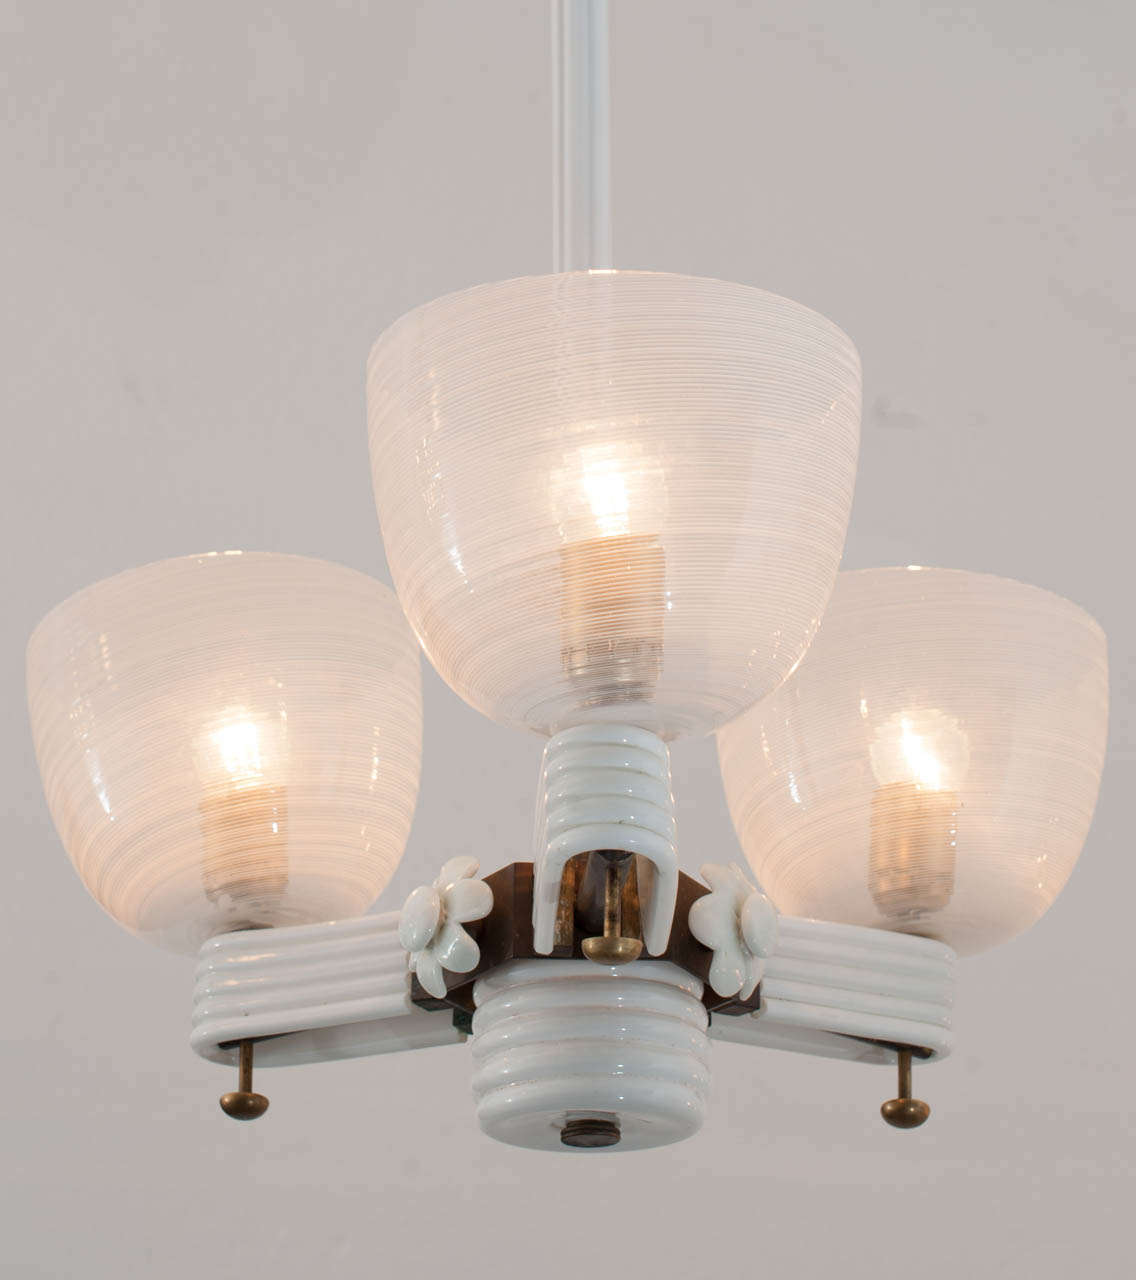 3-light chandelier in 